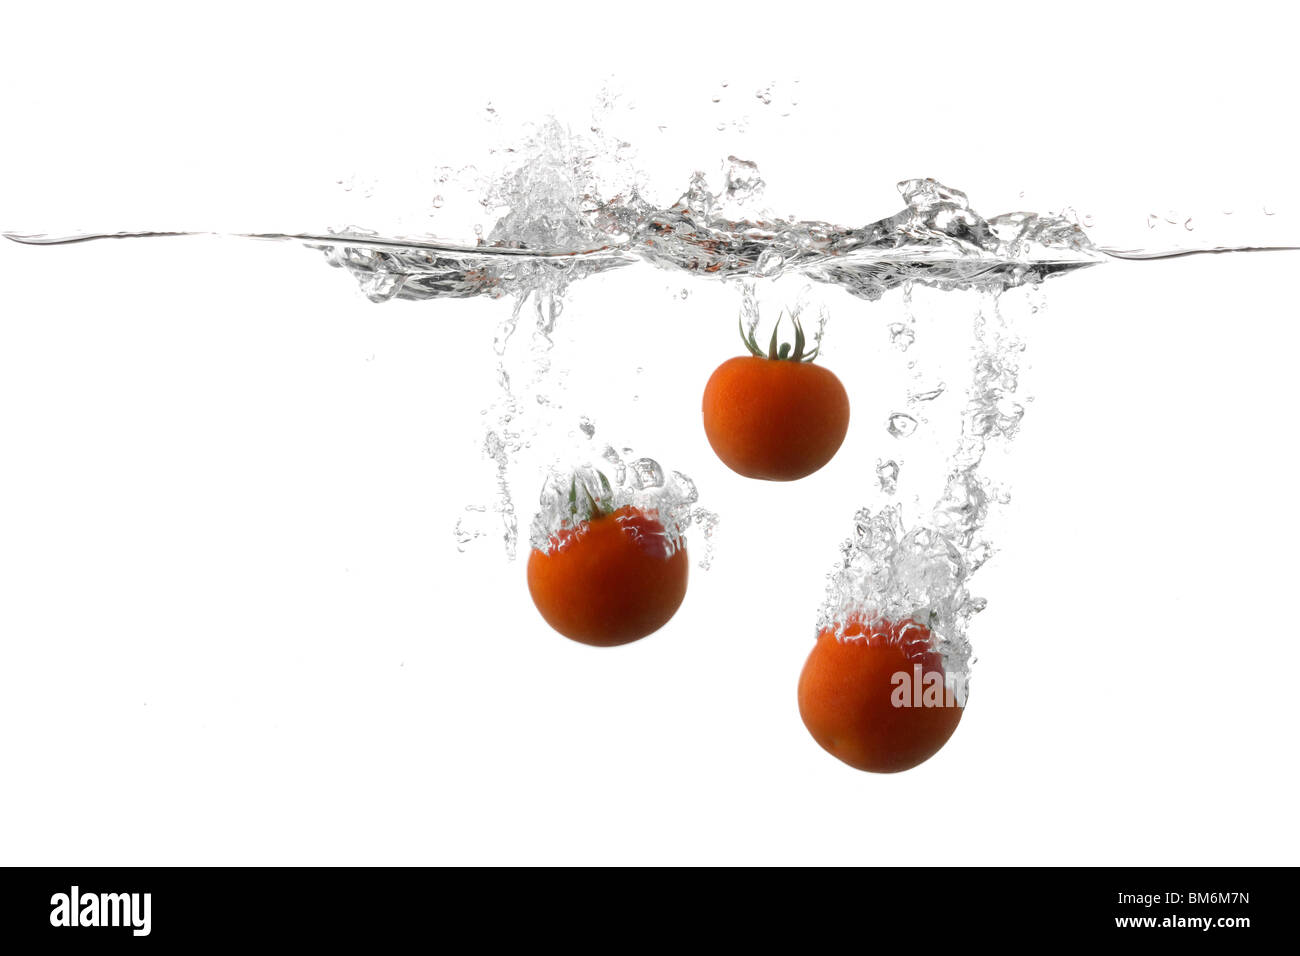 Frische Tomaten auf dem Wasser Spritzen Stockfoto